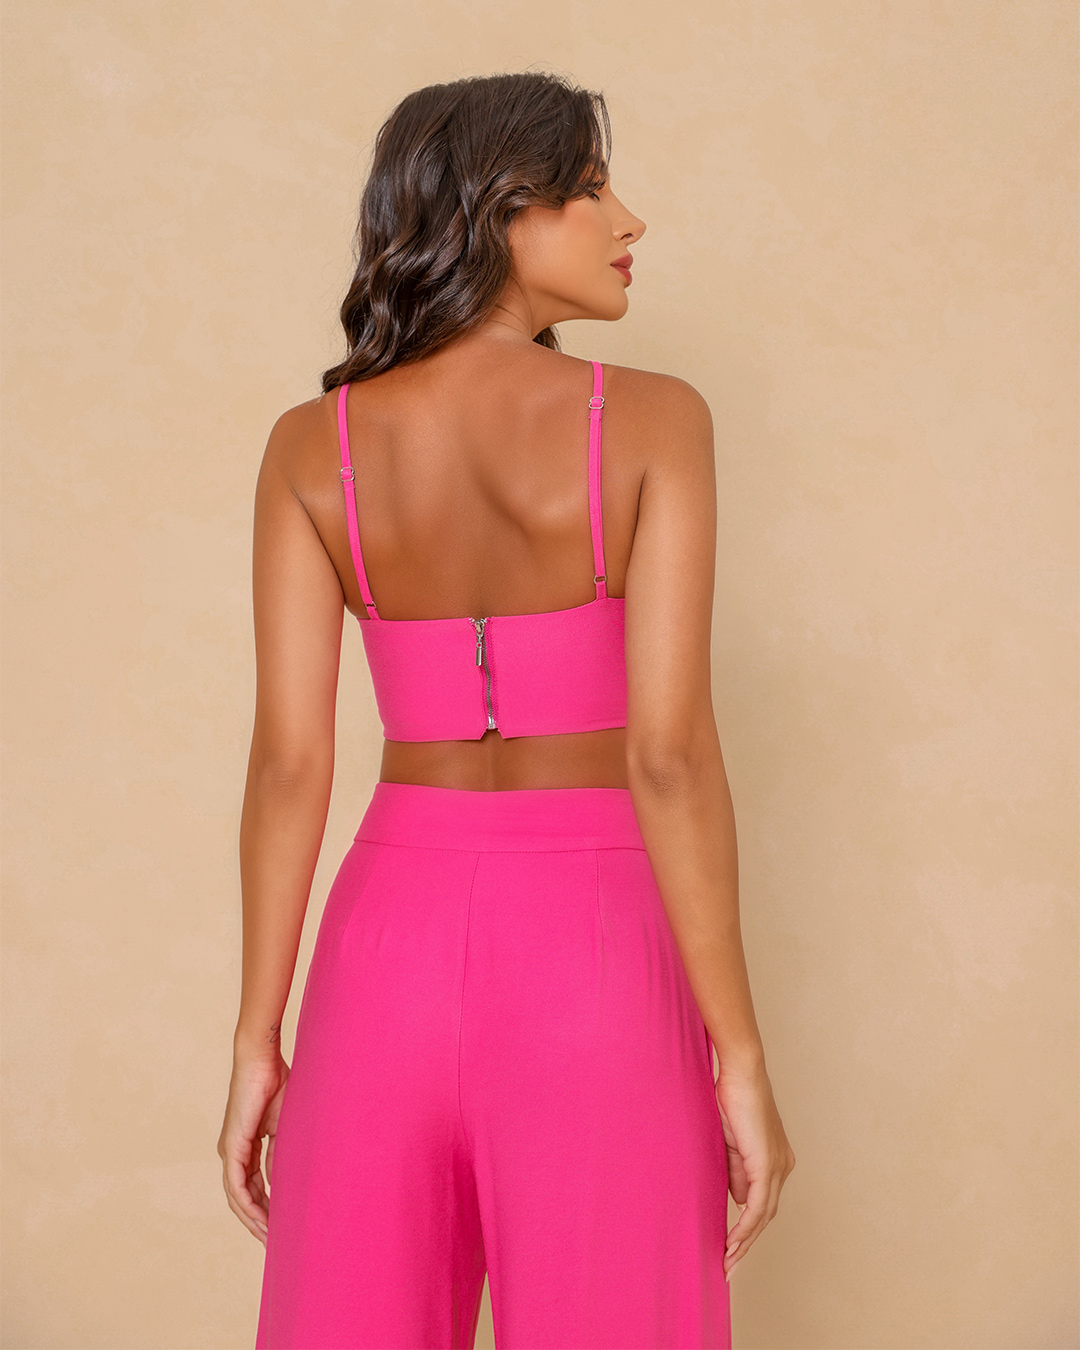 Dot Clothing - Set Dot Clothing Pantalona and Cropped Pink - 1834ROSA